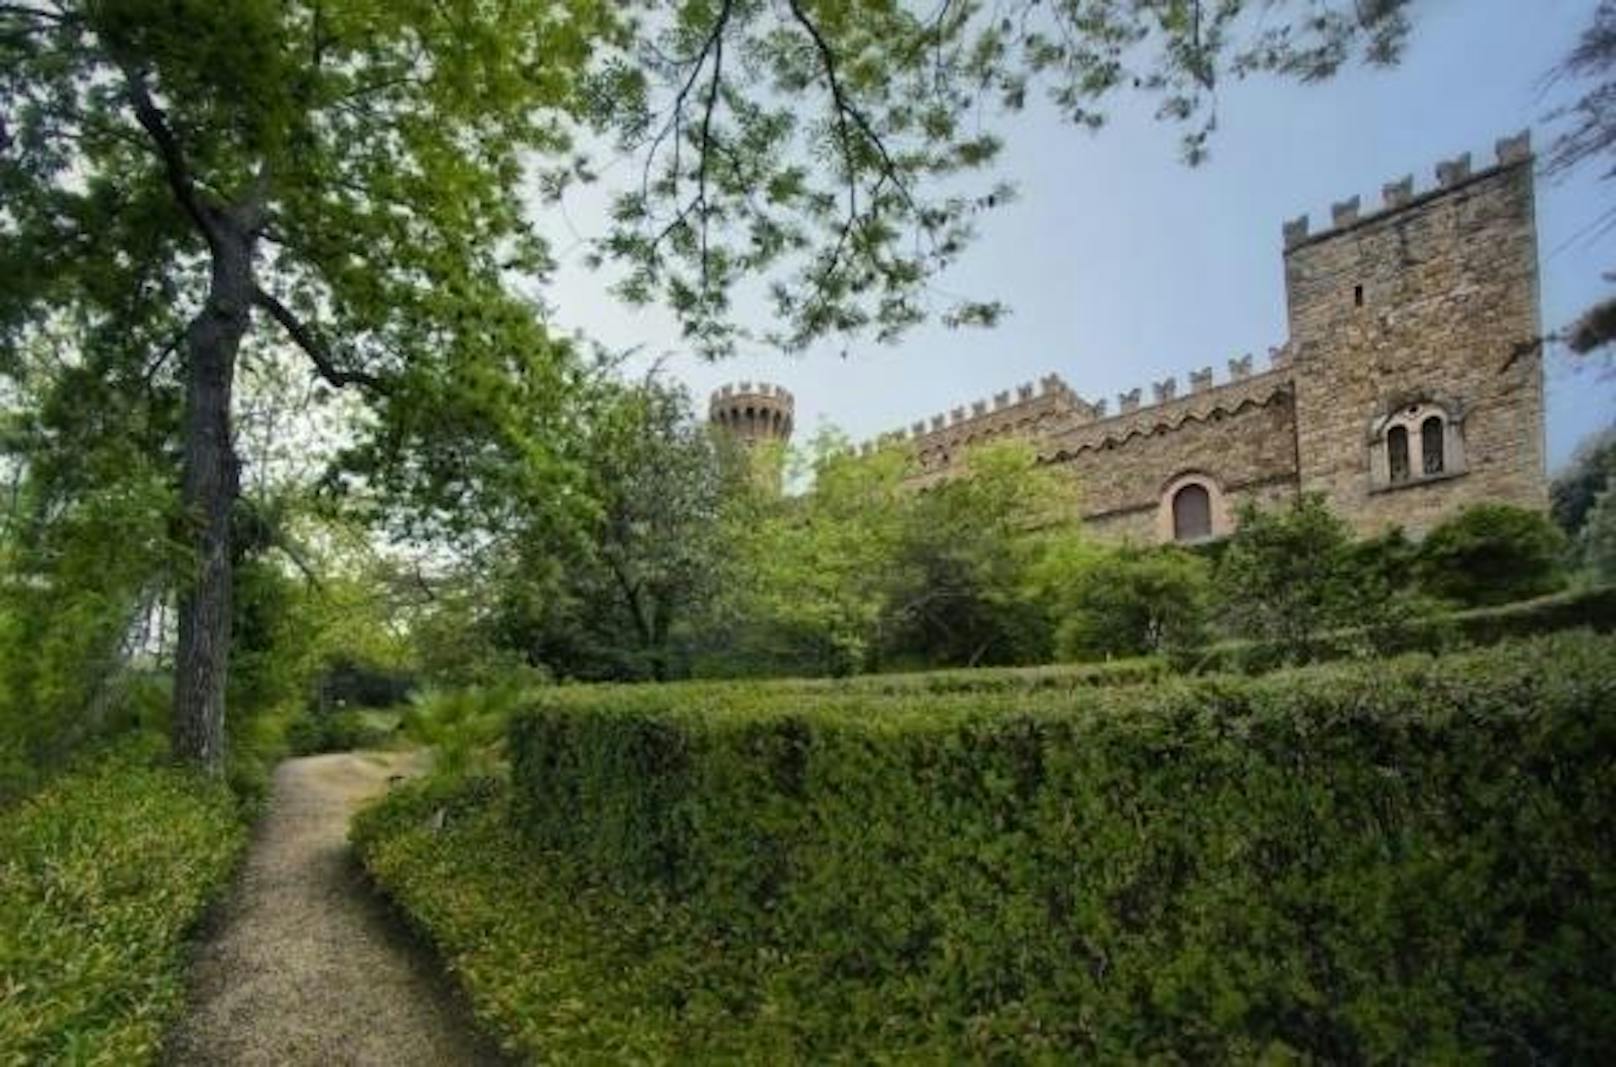 <b>Castello Borgia, Toskana, Italien</b>
Dürfen es etwas wärmere Gefilde sein? In Passignano sul Trasimeno befindet sich dieses Schloss, das einst der berühmten Familie Borgia gehörte.